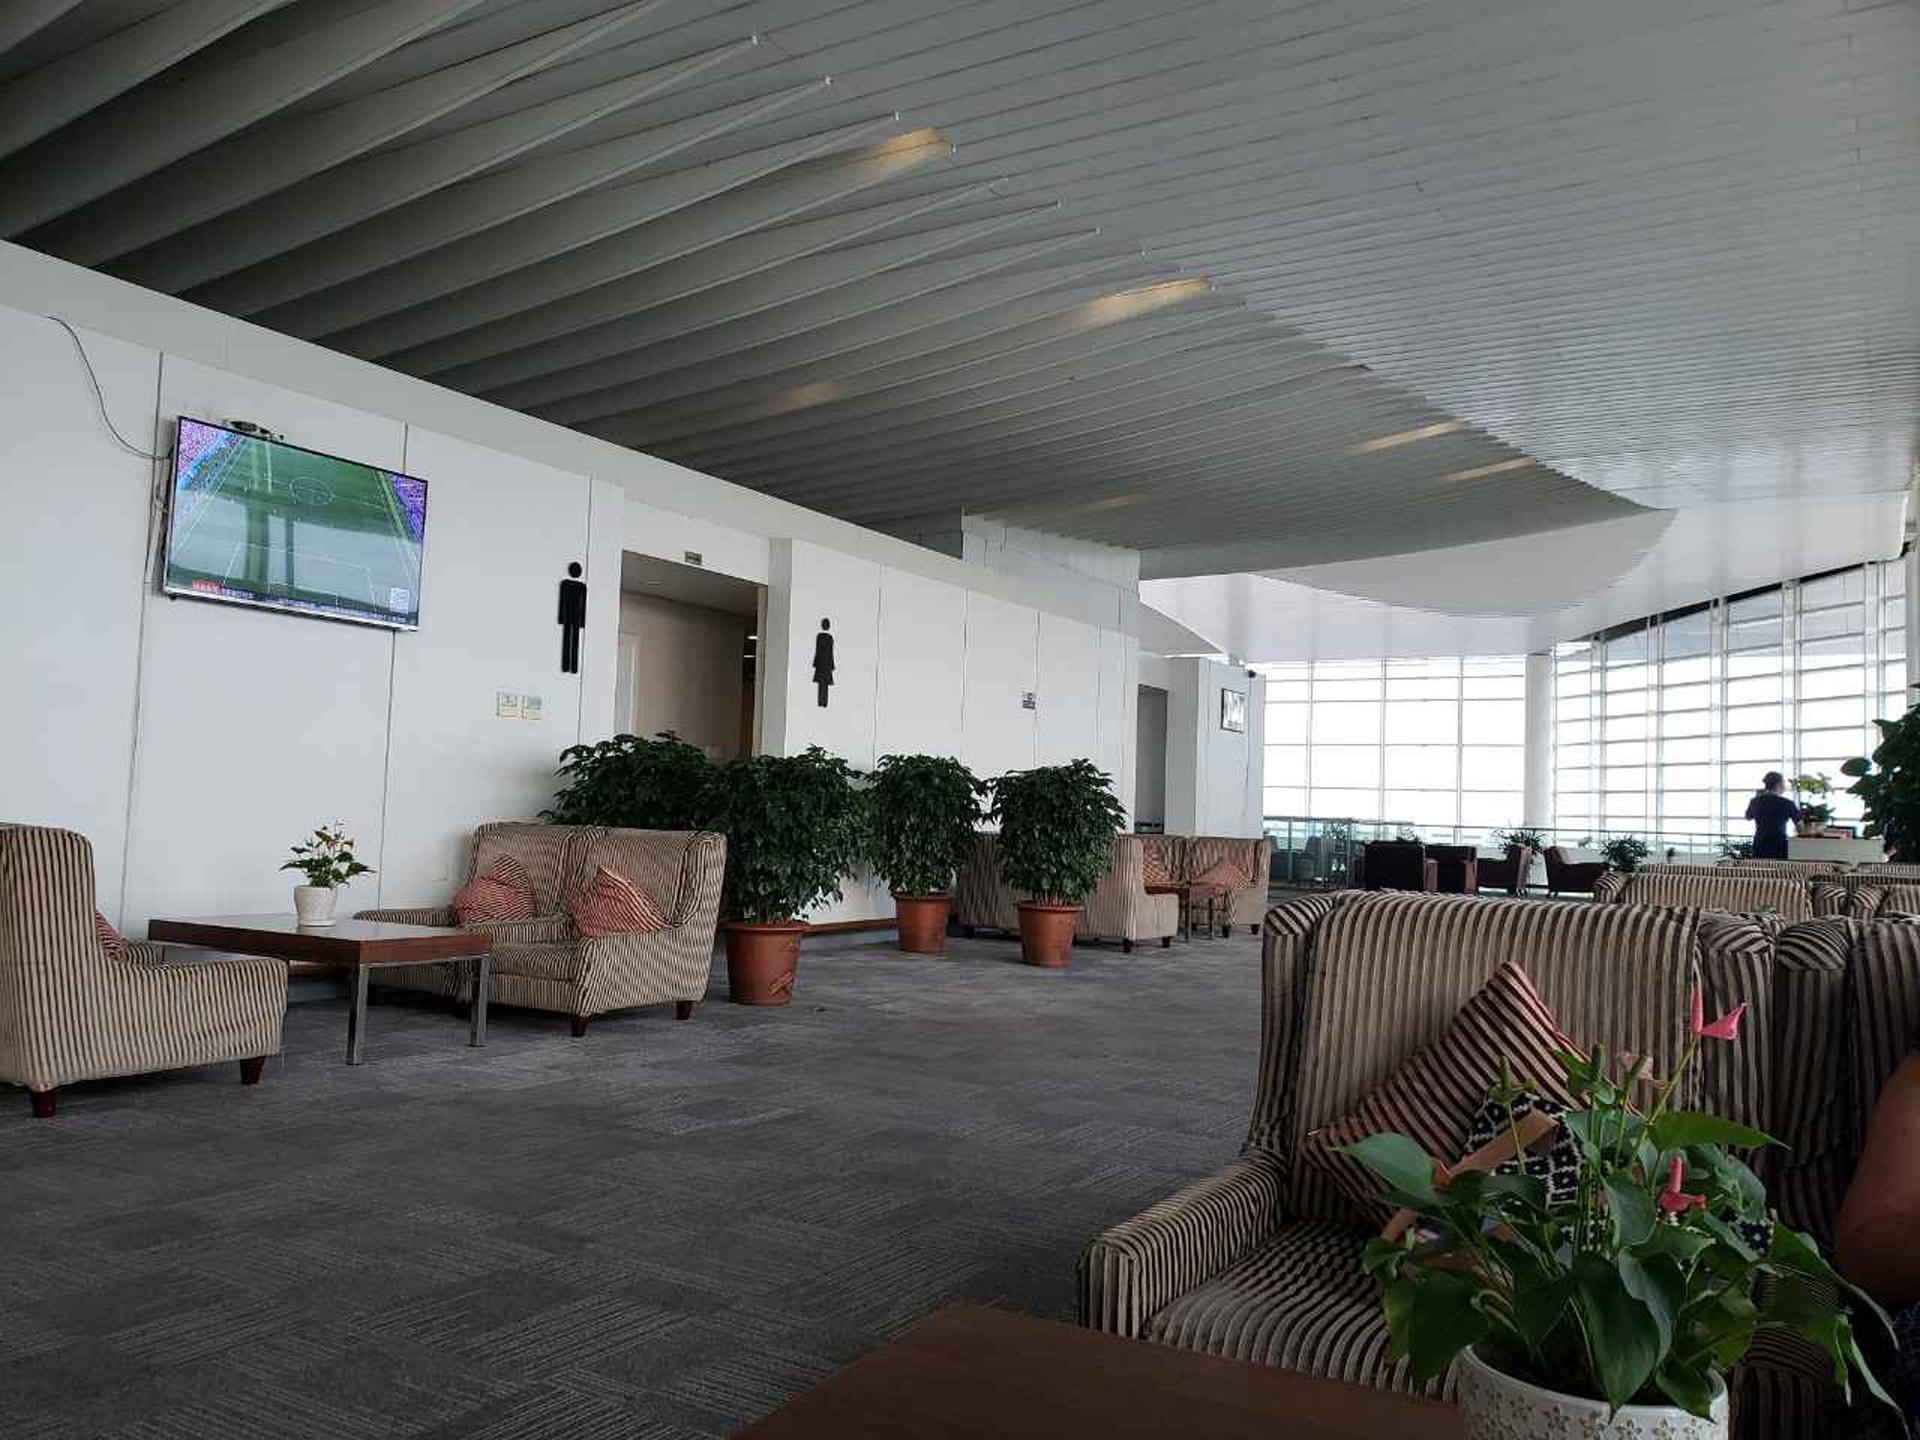 Hangzhou Xiaoshan Airport First Class Lounge image 8 of 8